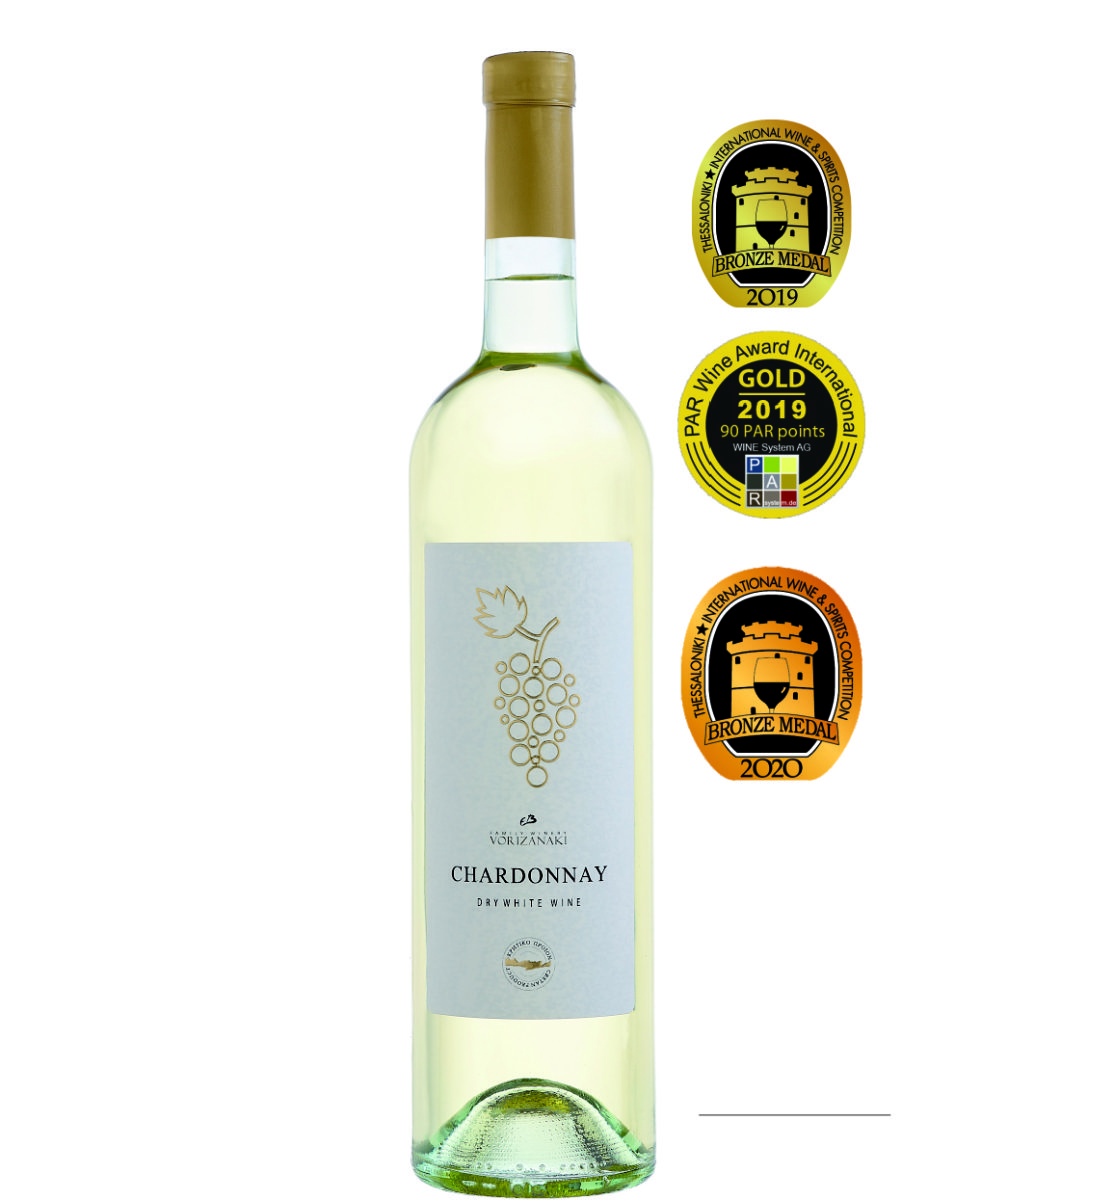 Chardonnay 0.75L – Greek Wines from Creta Island